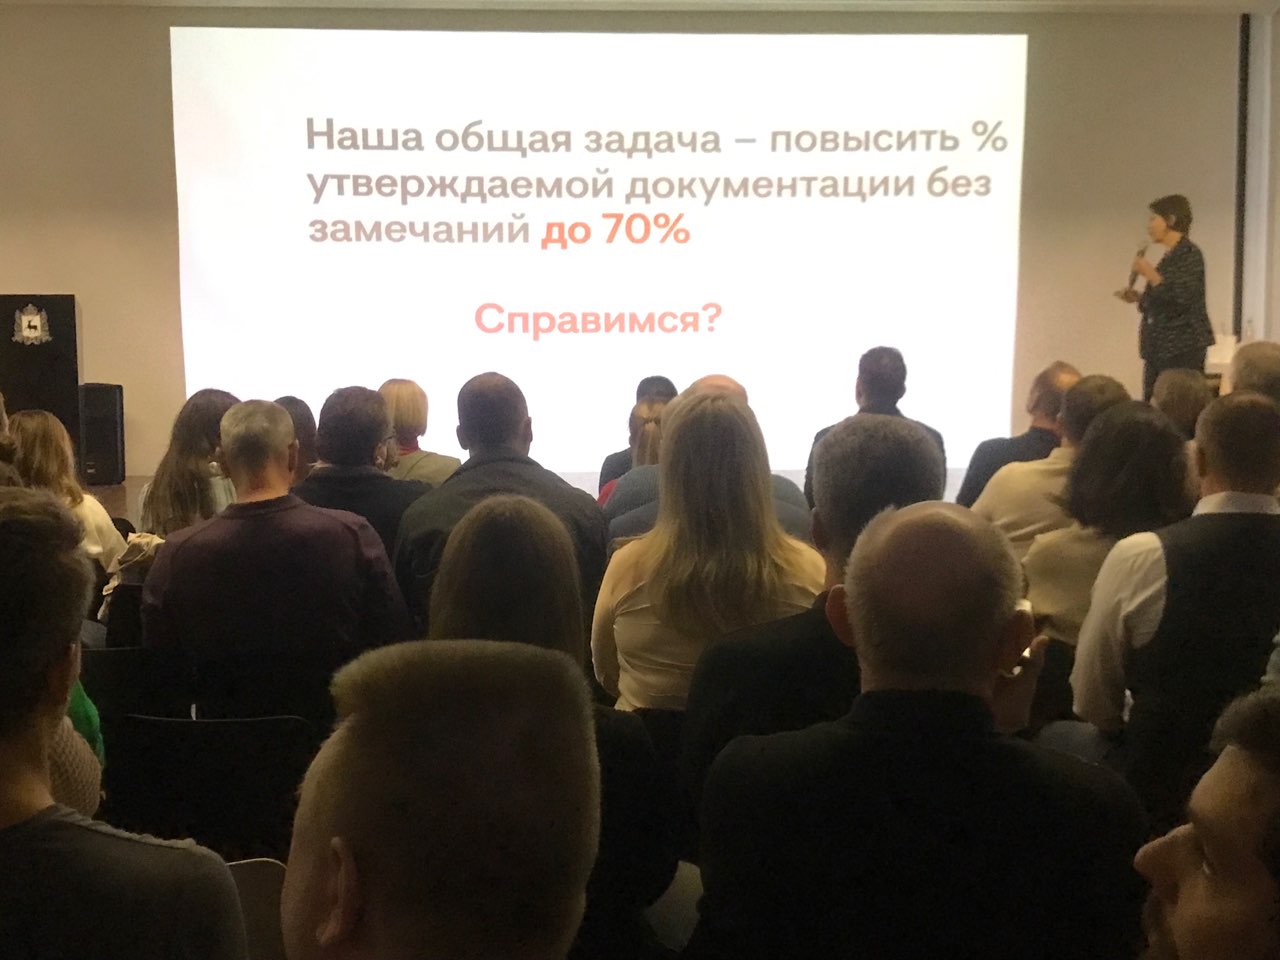 В Нижегородской области без замечаний принимаются только 20% строительной документации - фото 1